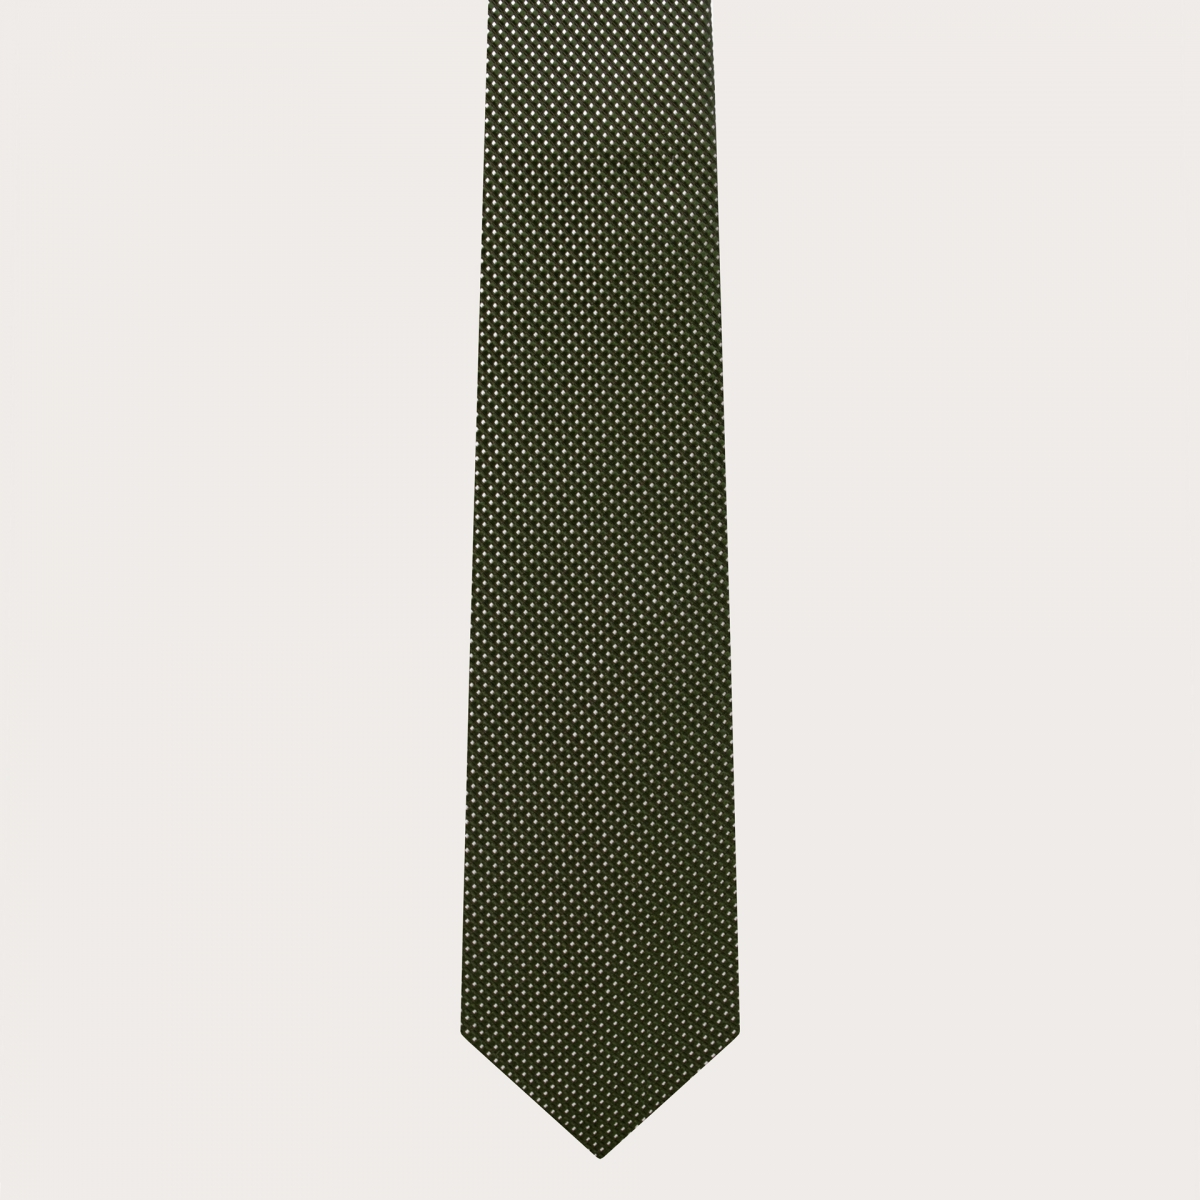 BRUCLE Elegante cravatta in seta verde puntaspillo